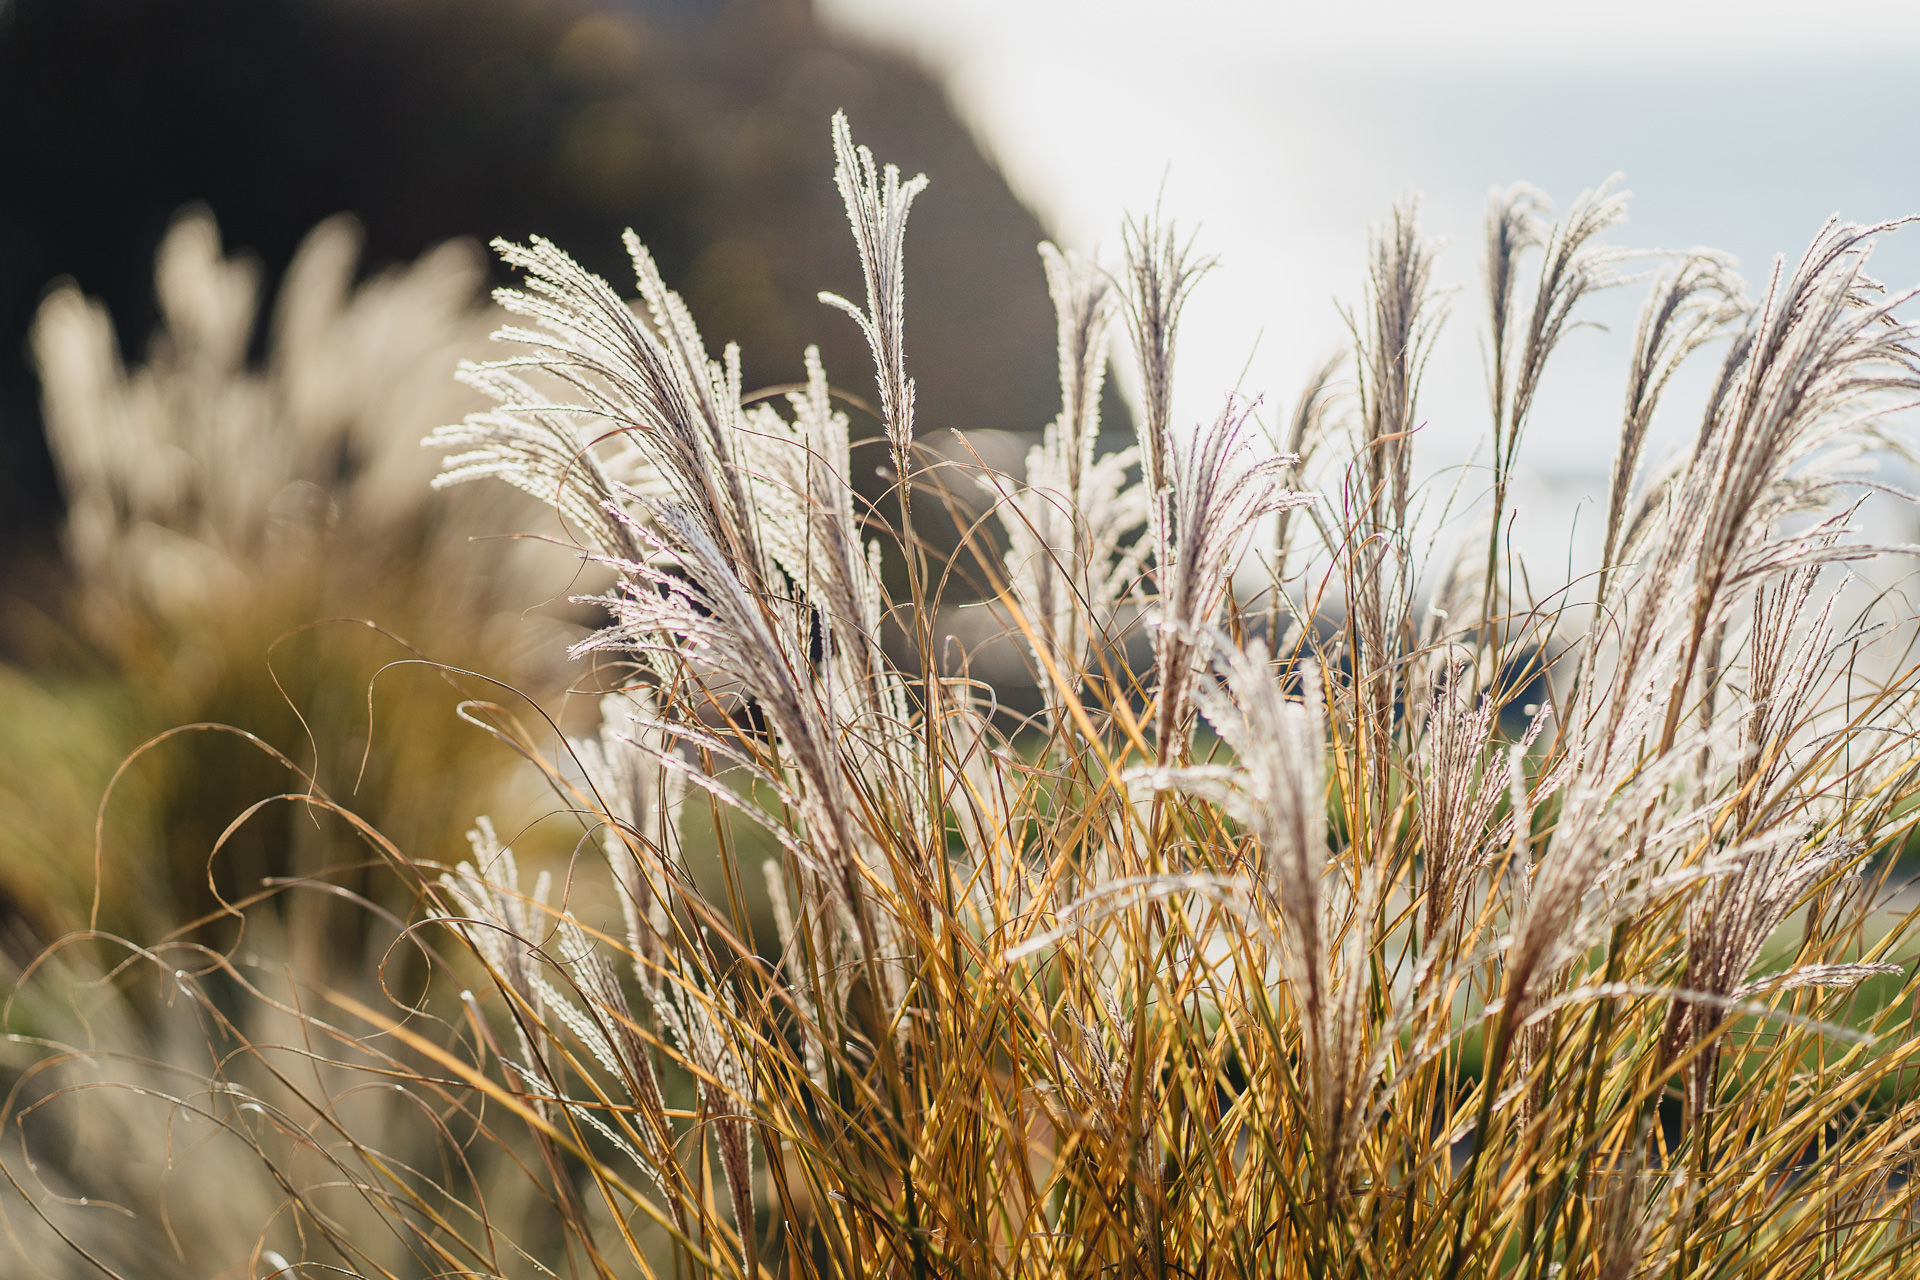 Some seaside grasses in winter sunlight